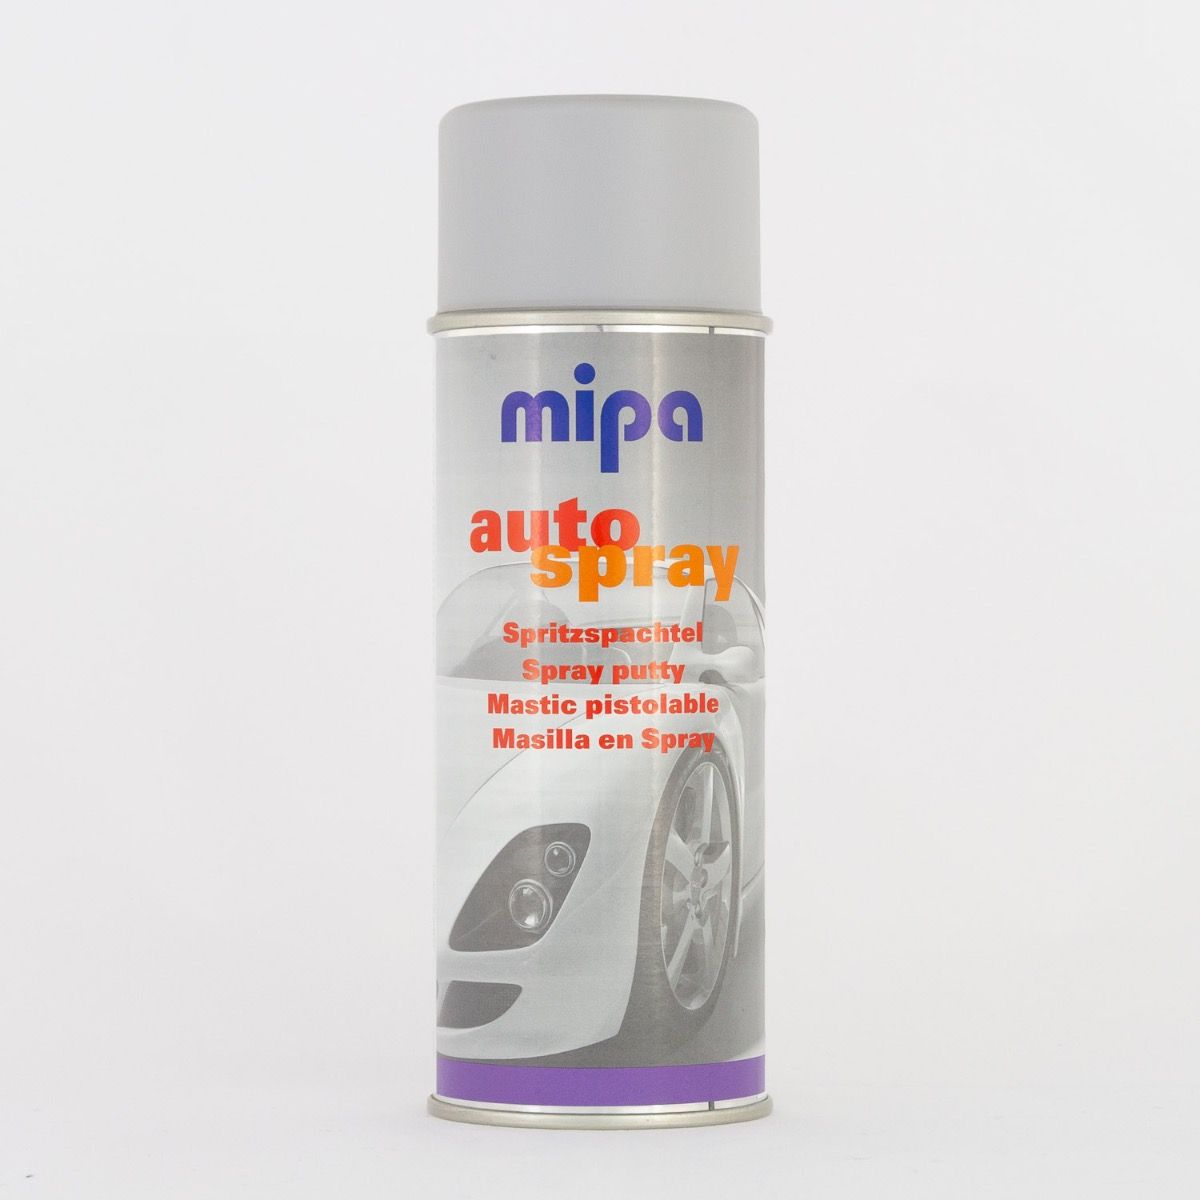 Mipa Spritzspachtel 400 ml Auto-Spray - Onlineshop rund um Lacke